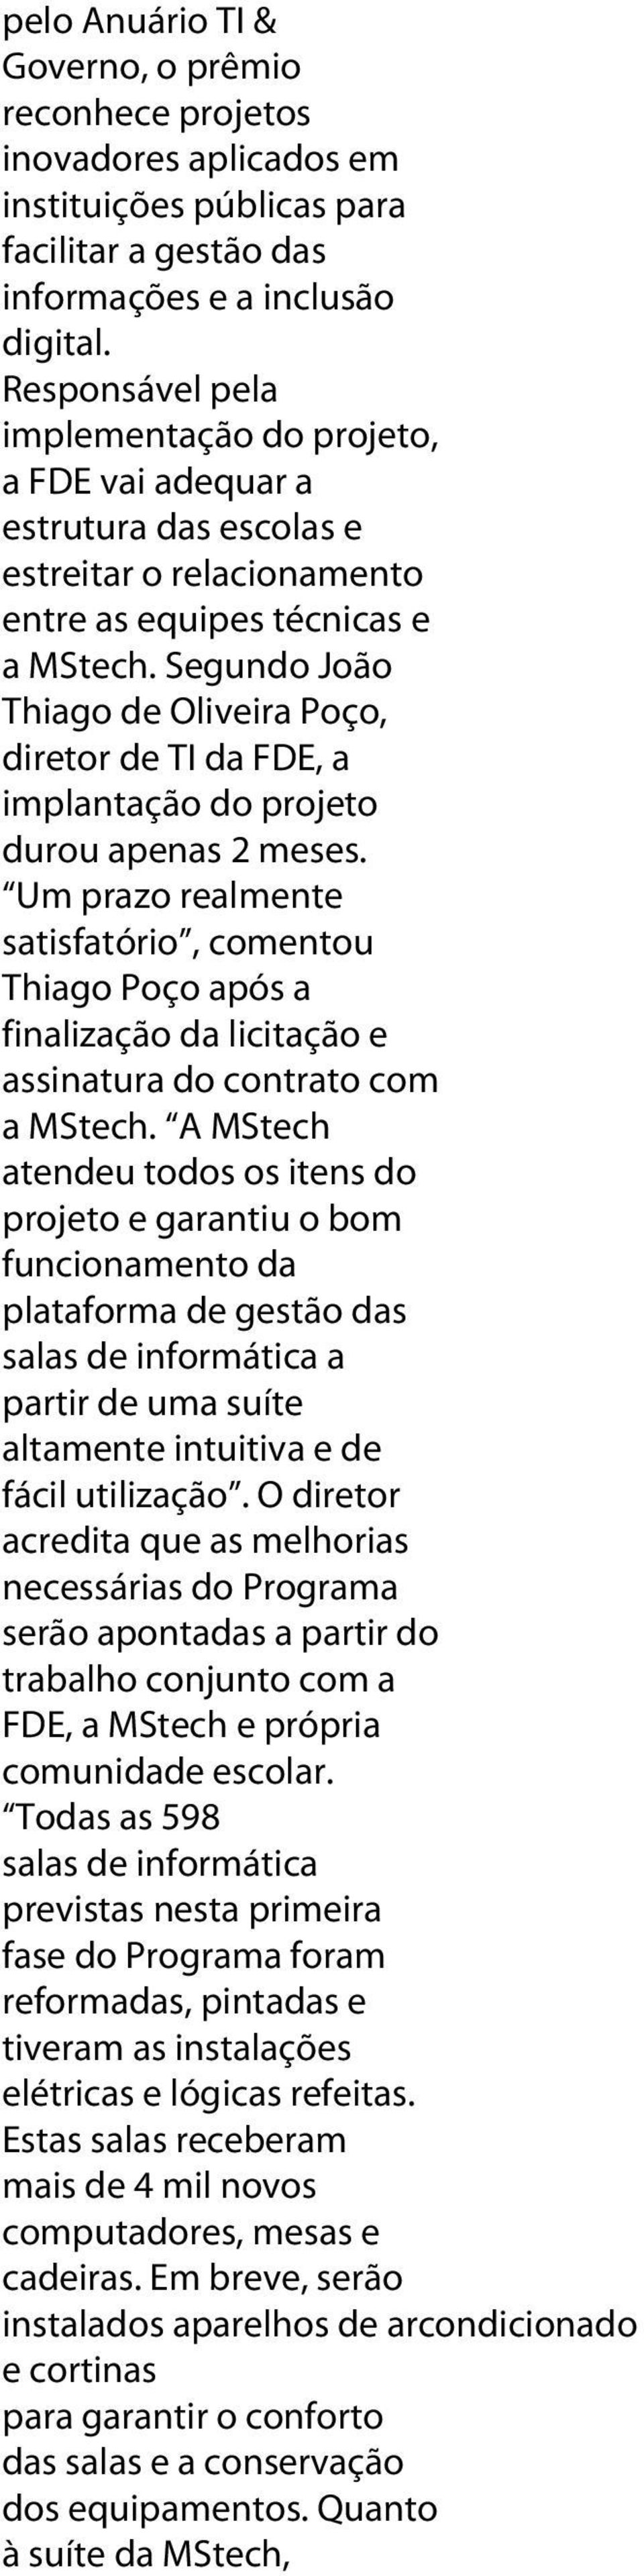 Segundo João Thiago de Oliveira Poço, diretor de TI da FDE, a implantação do projeto durou apenas 2 meses.